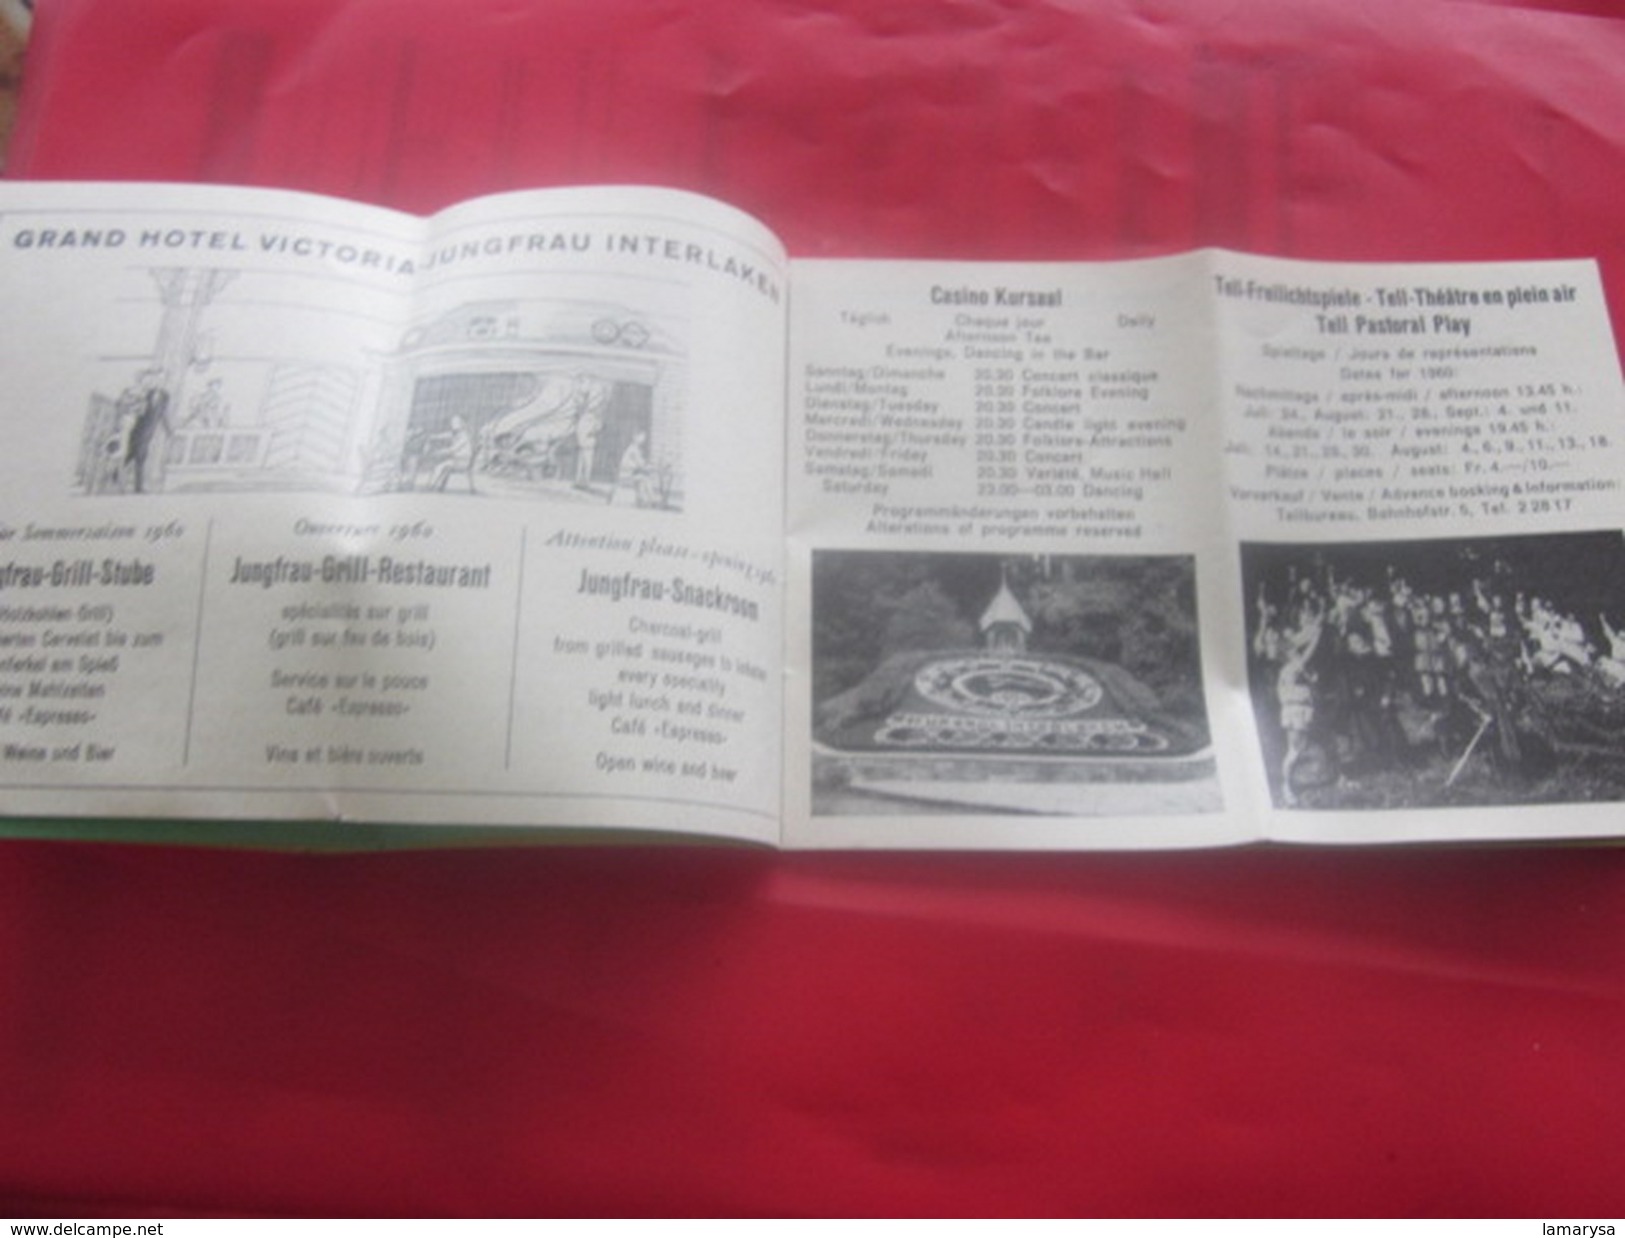 Suisse INTERLAKEN KURKARTE 1960 HÔTEL HORN Publicité Excursions Dépliant Touristique:Avis,Notice,info,Casino,Pub,Plan